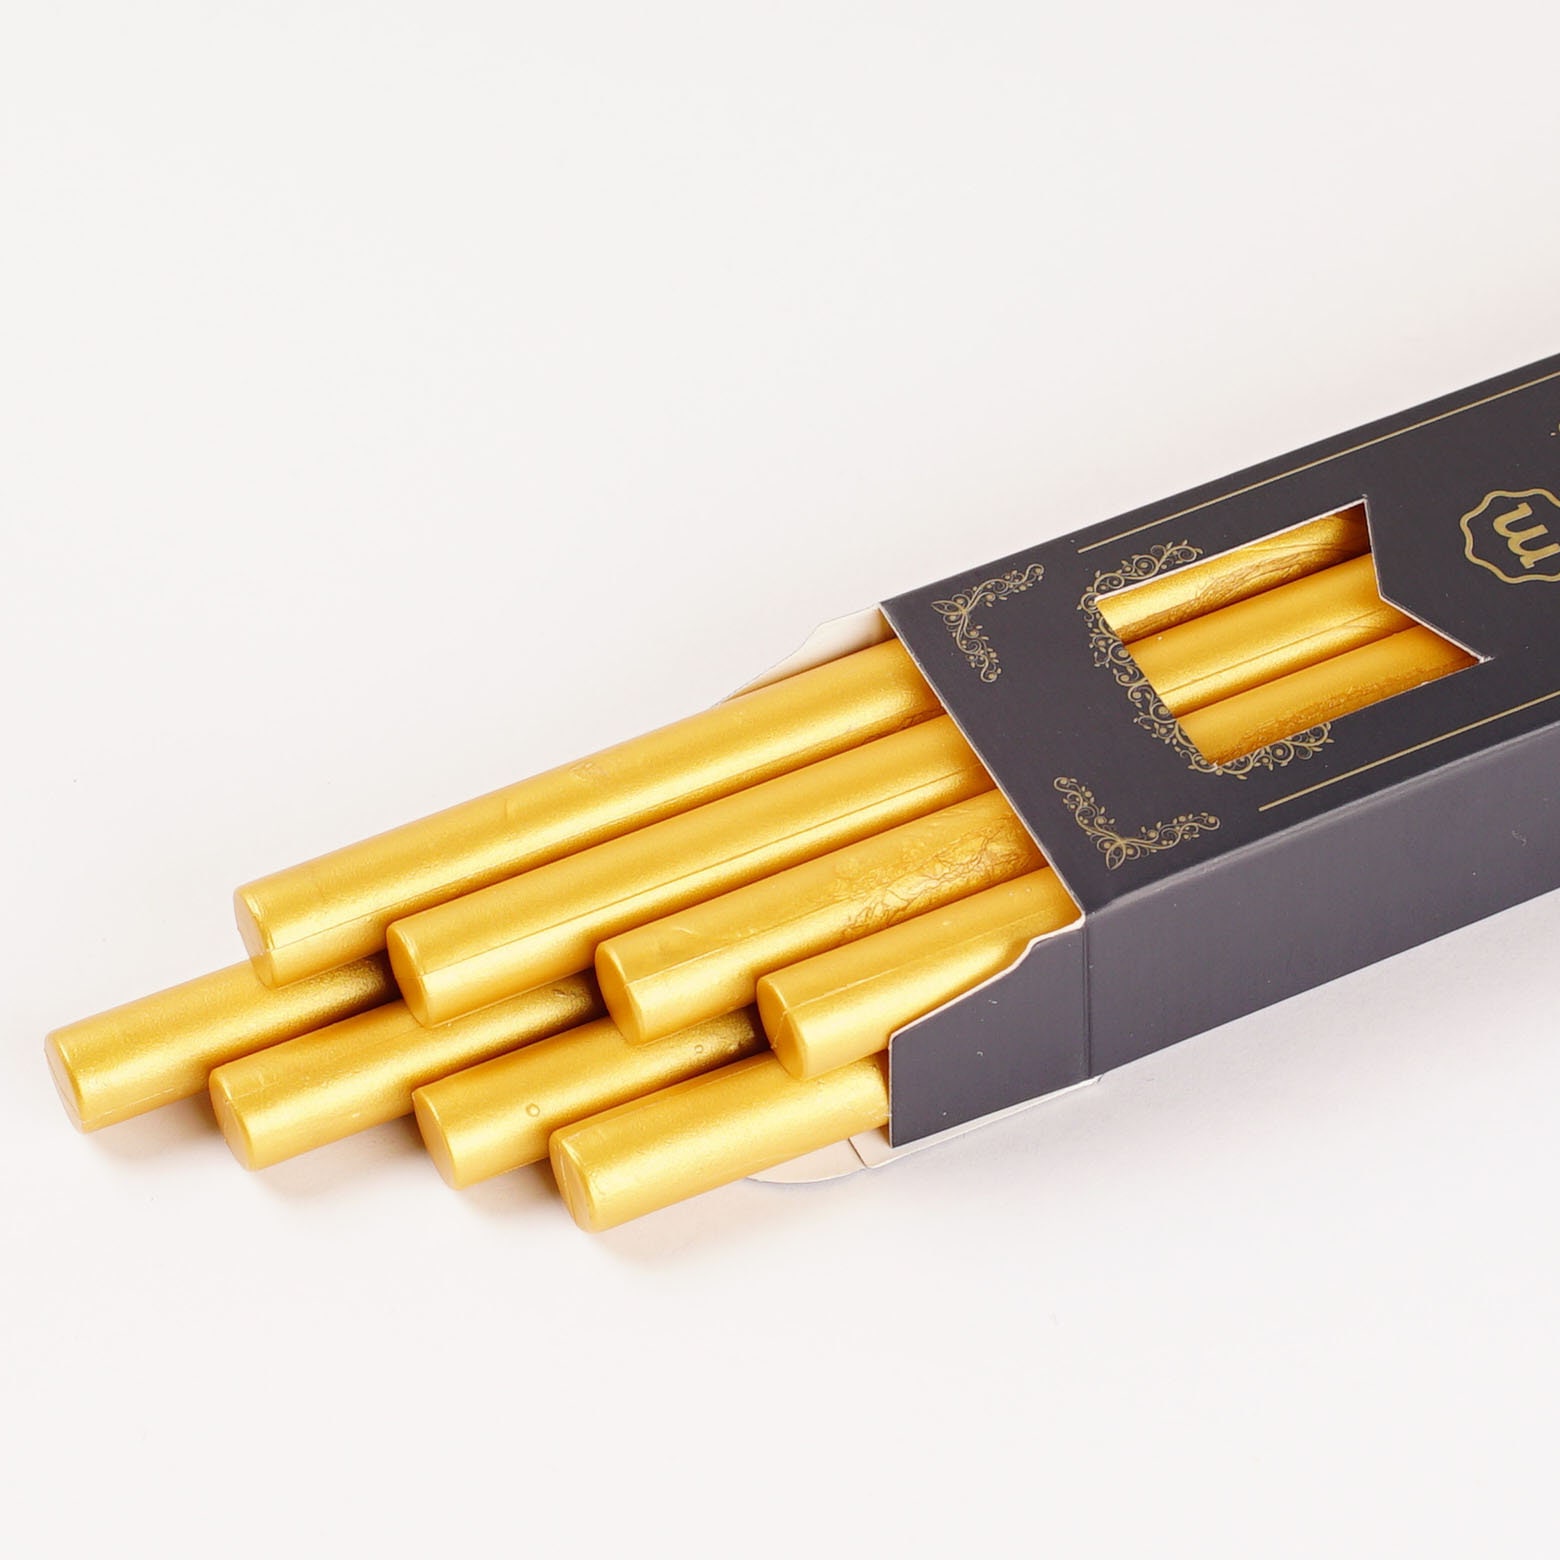 Iridescent Gold Glue Gun Sealing Wax Sticks, 8 Pack